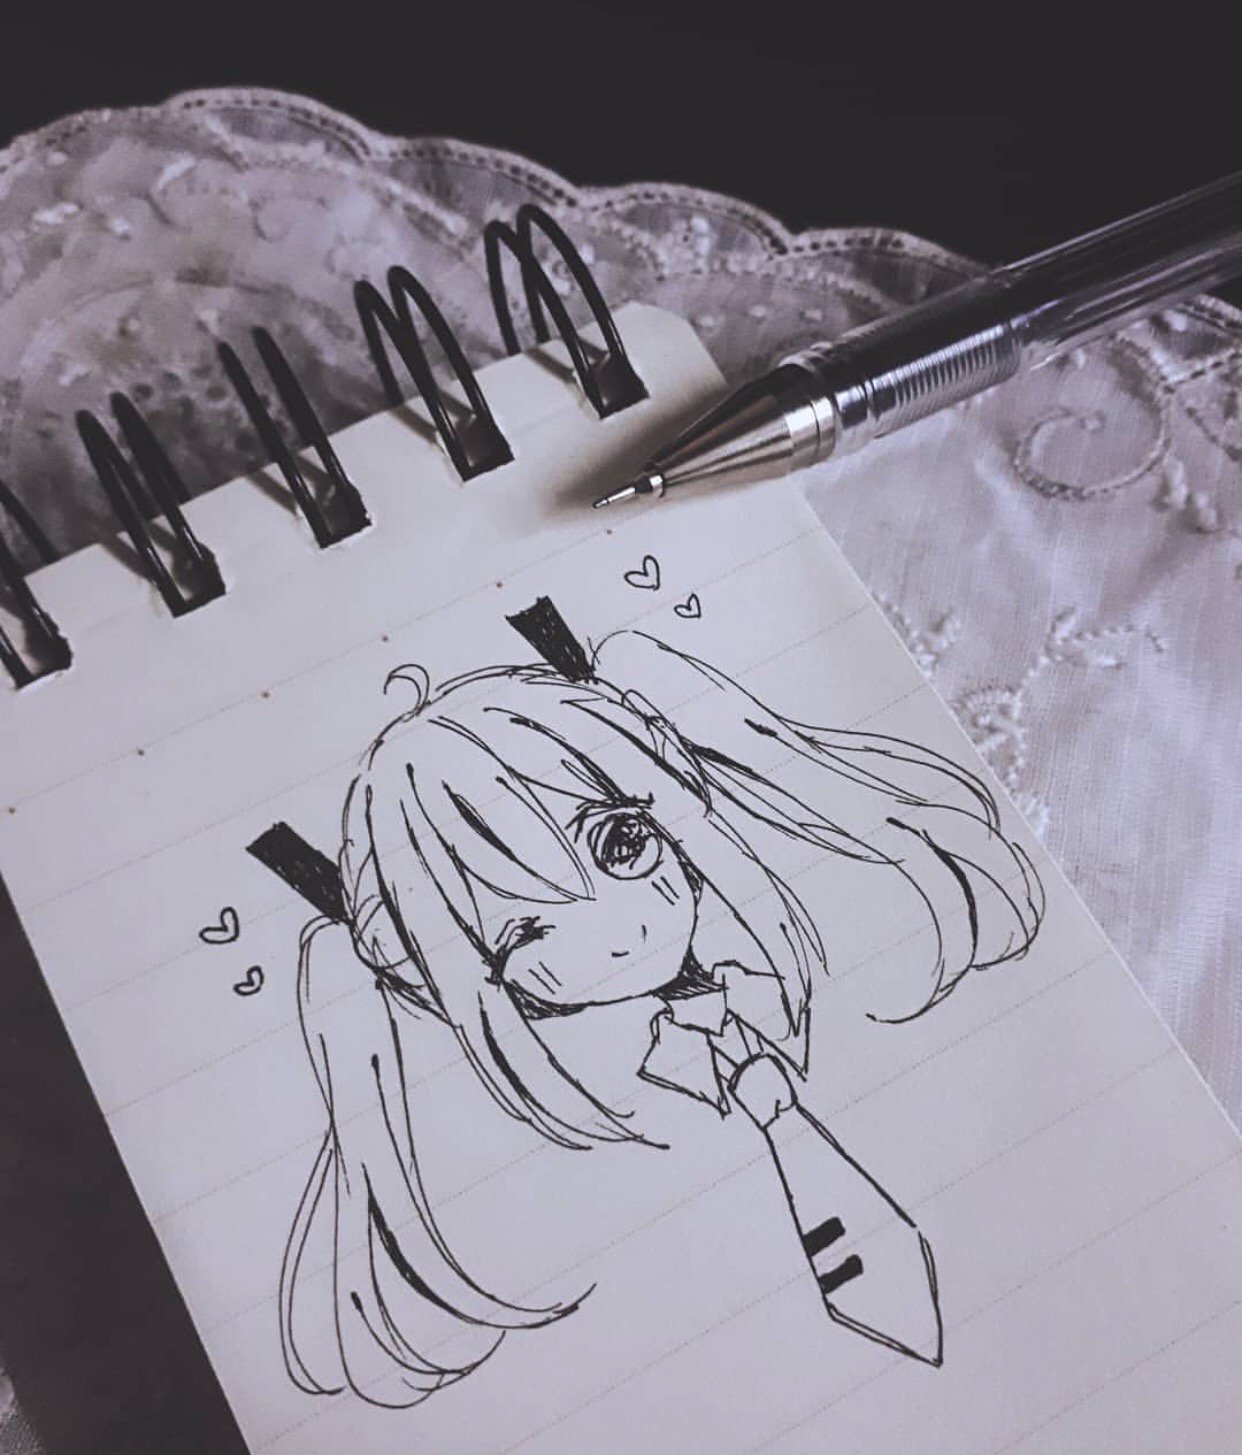 ٠٠ umeiru cat art drawing artist anime sketch pen ink  pendrawing inkdrawing  Instagram